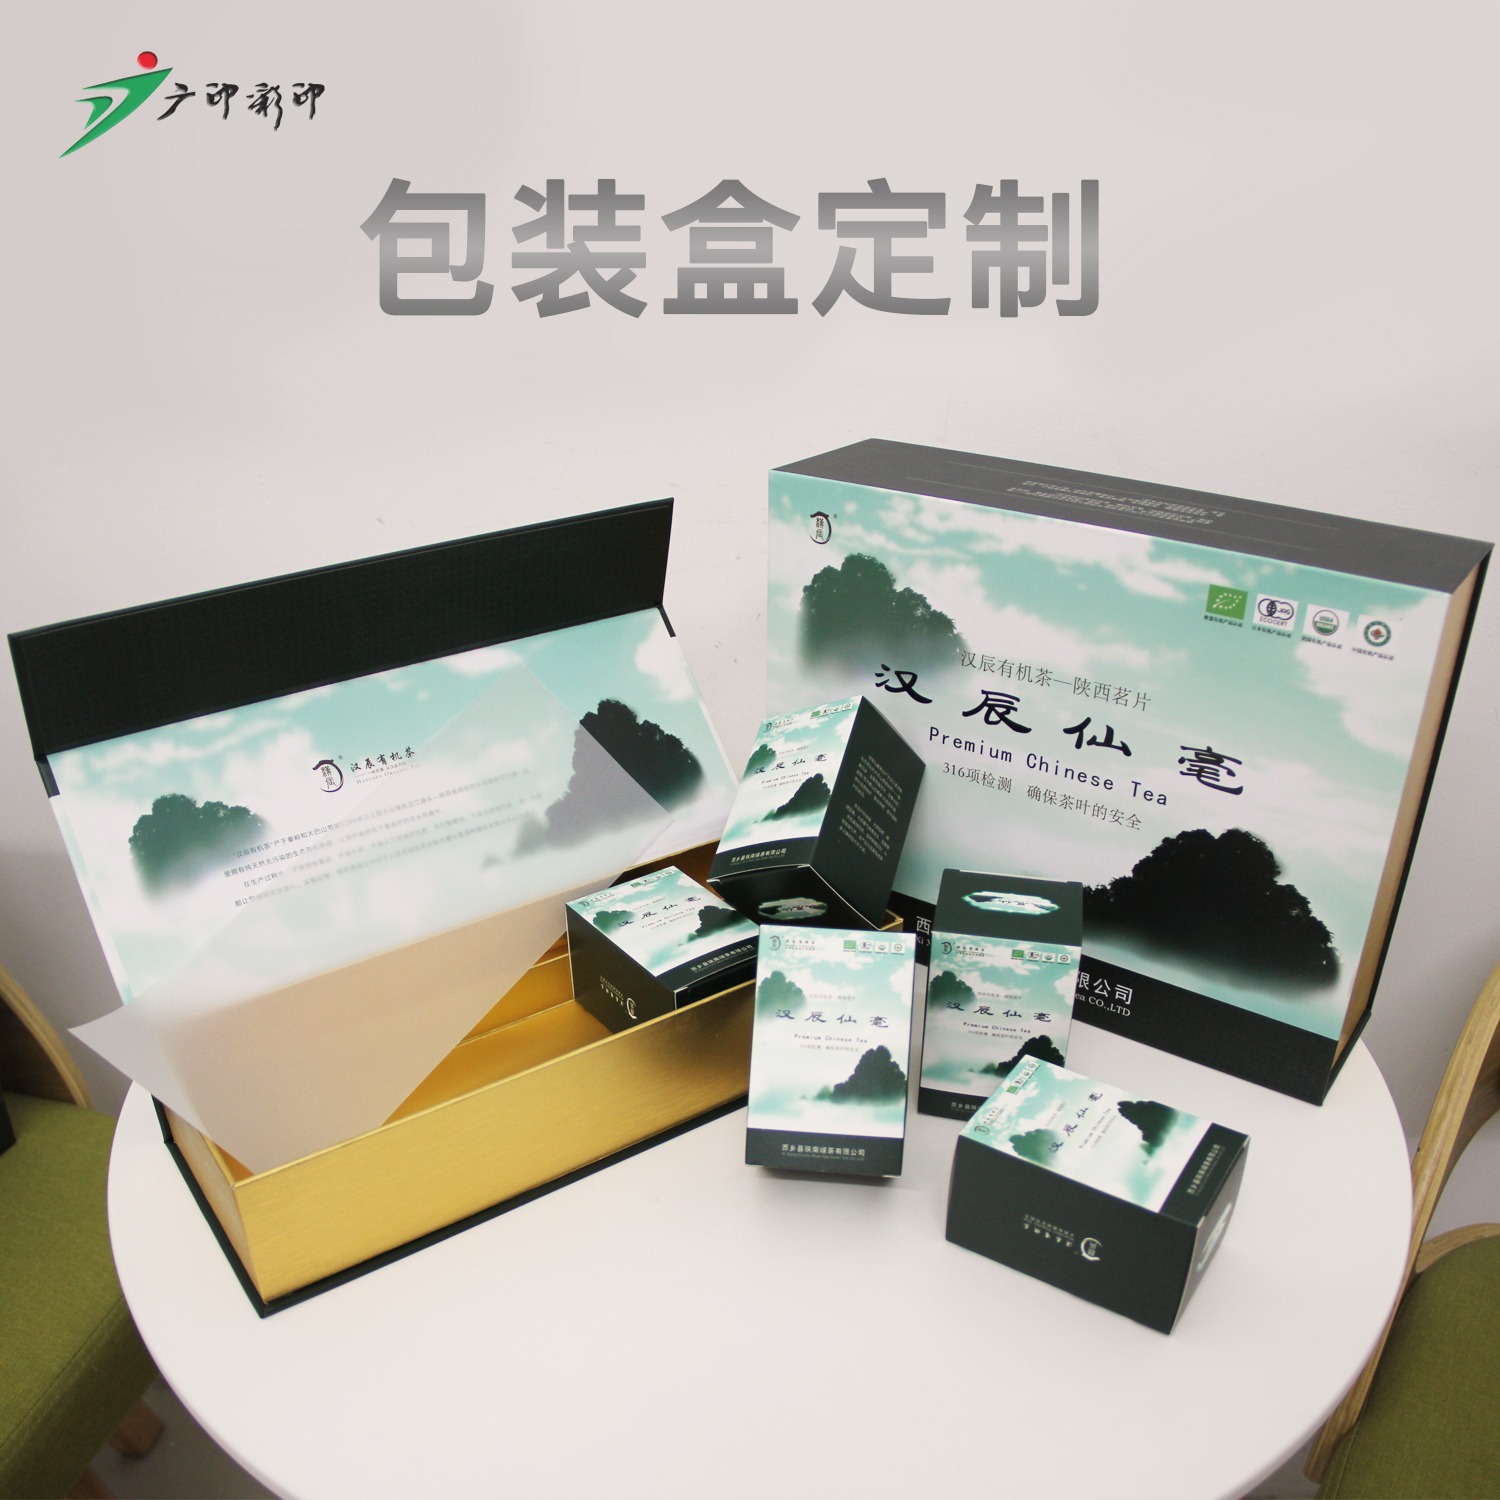 合肥包装盒厂家 广印彩印 天地盖茶叶包装盒定制 纸盒彩盒包装设计印刷一站式服务